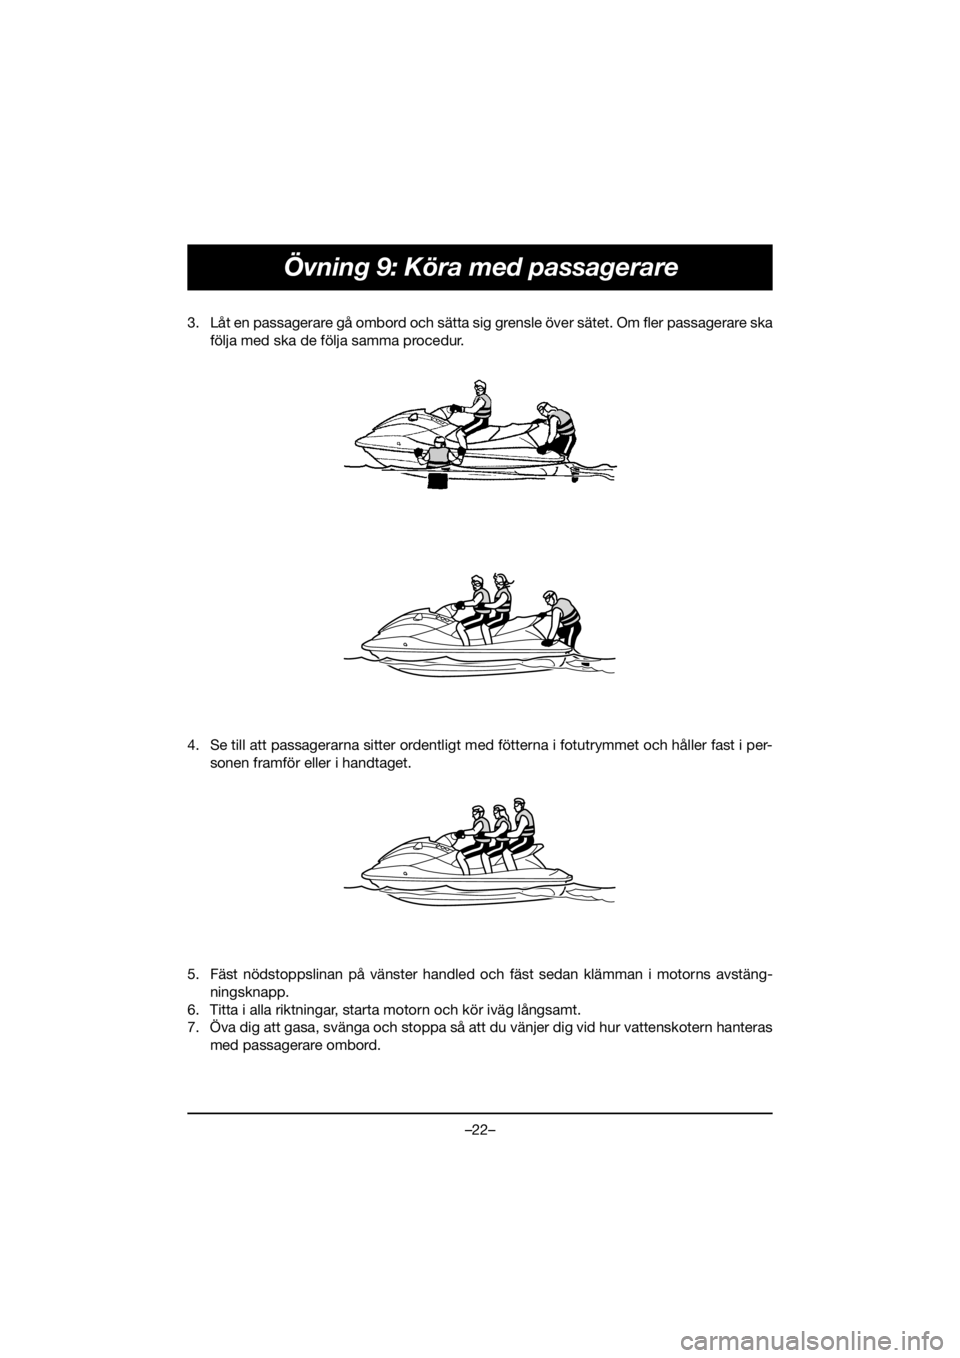 YAMAHA EX SPORT 2020  Manuale de Empleo (in Spanish) –22–
Övning 9: Köra med passagerare
3. Låt en passagerare gå ombord och sätta sig grensle över sätet. Om fler passagerare ska
följa med ska de följa samma procedur. 
4. Se till att passag